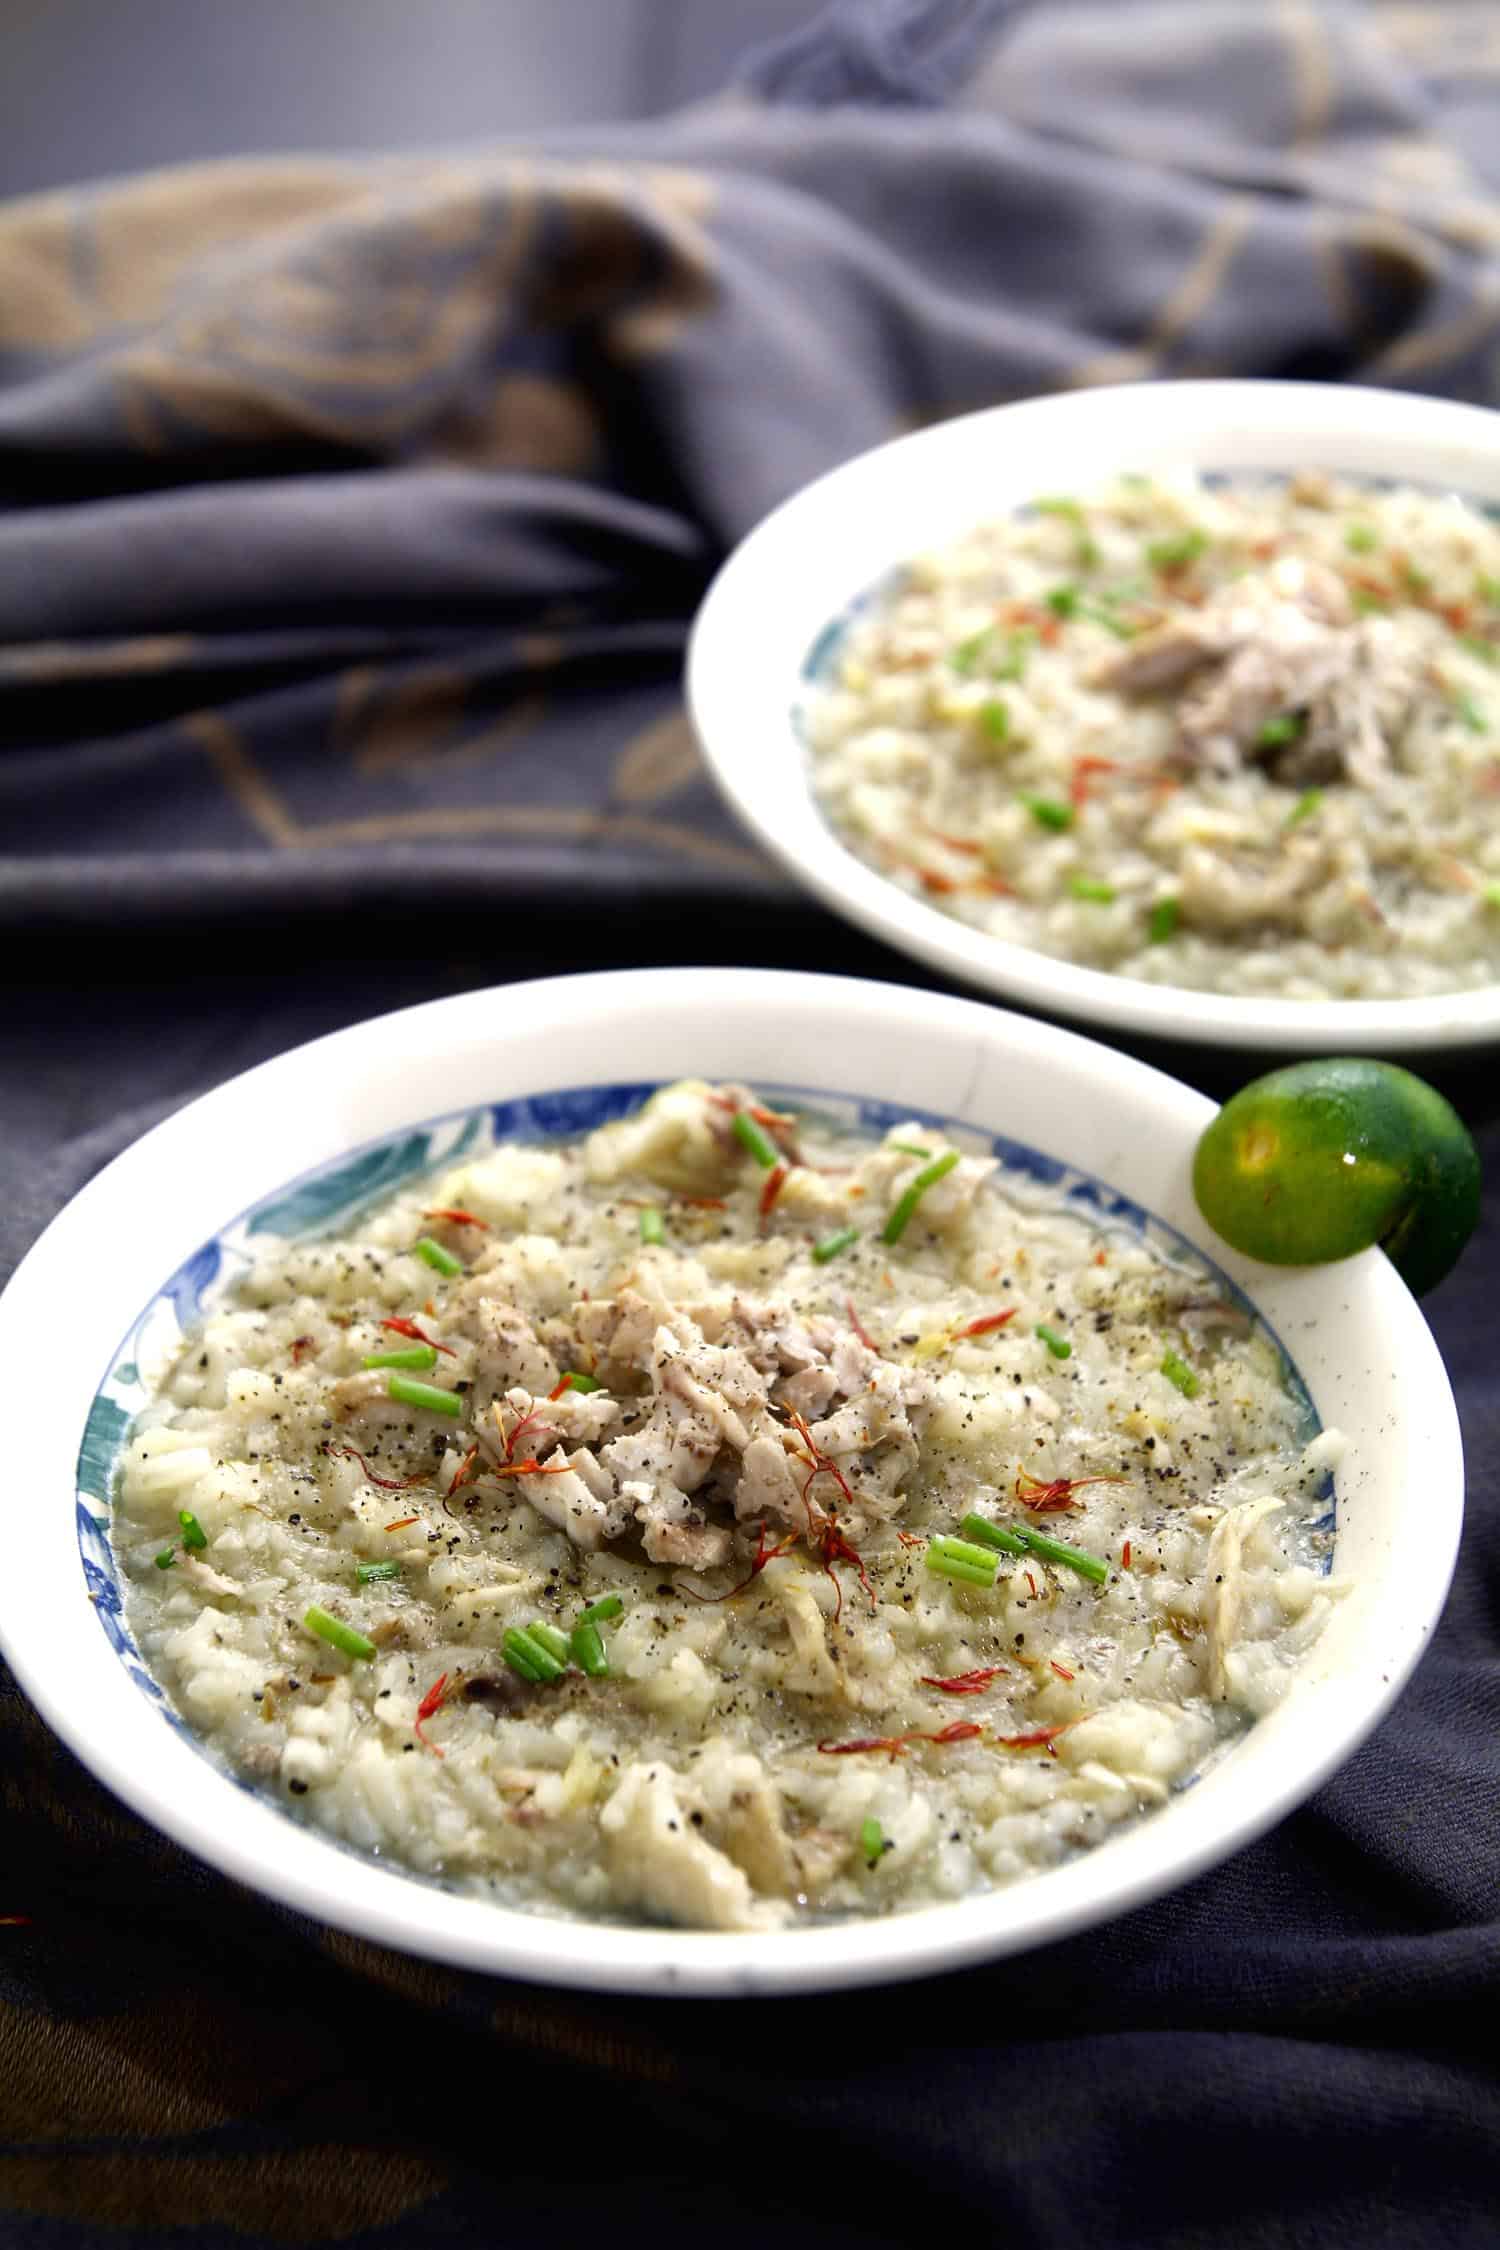 Filipino porridge called arroz caldo